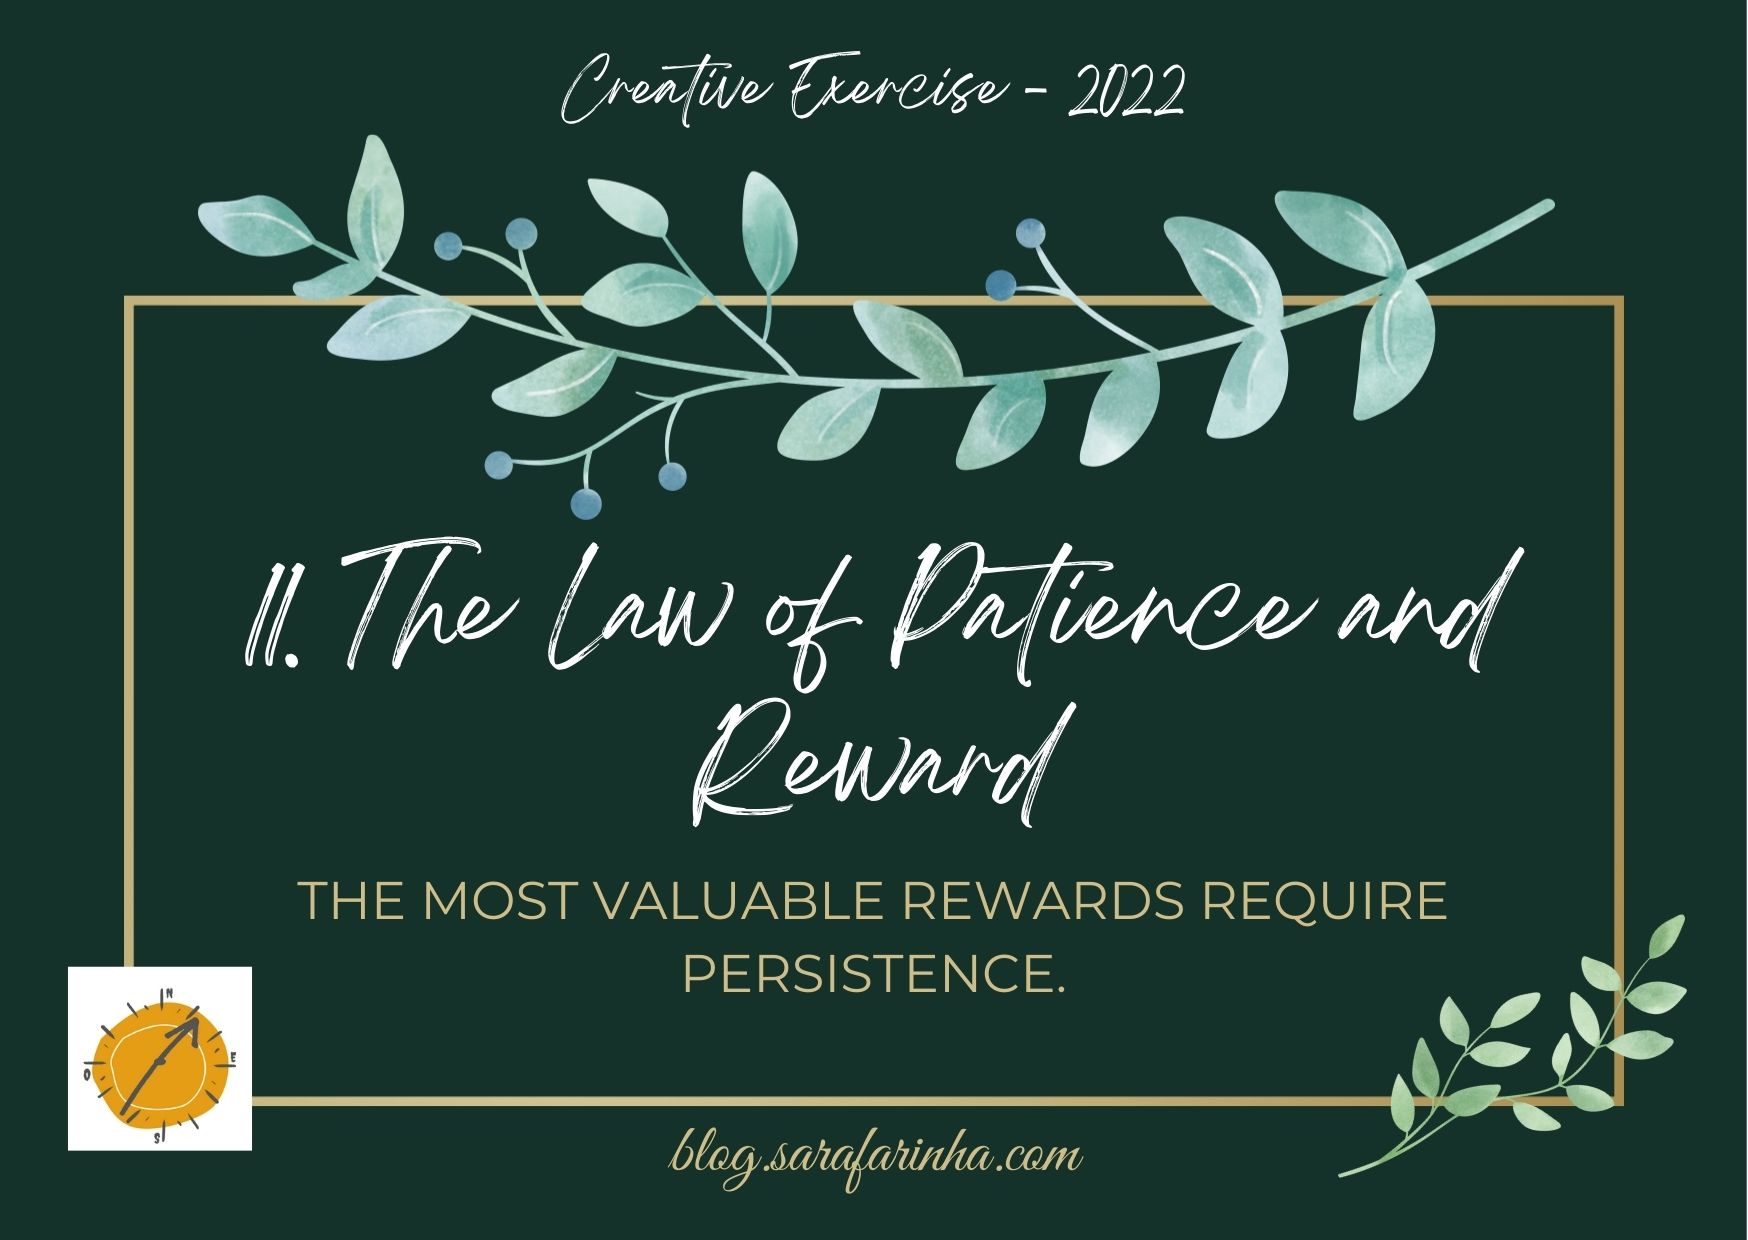 lei da paciência e recompensa